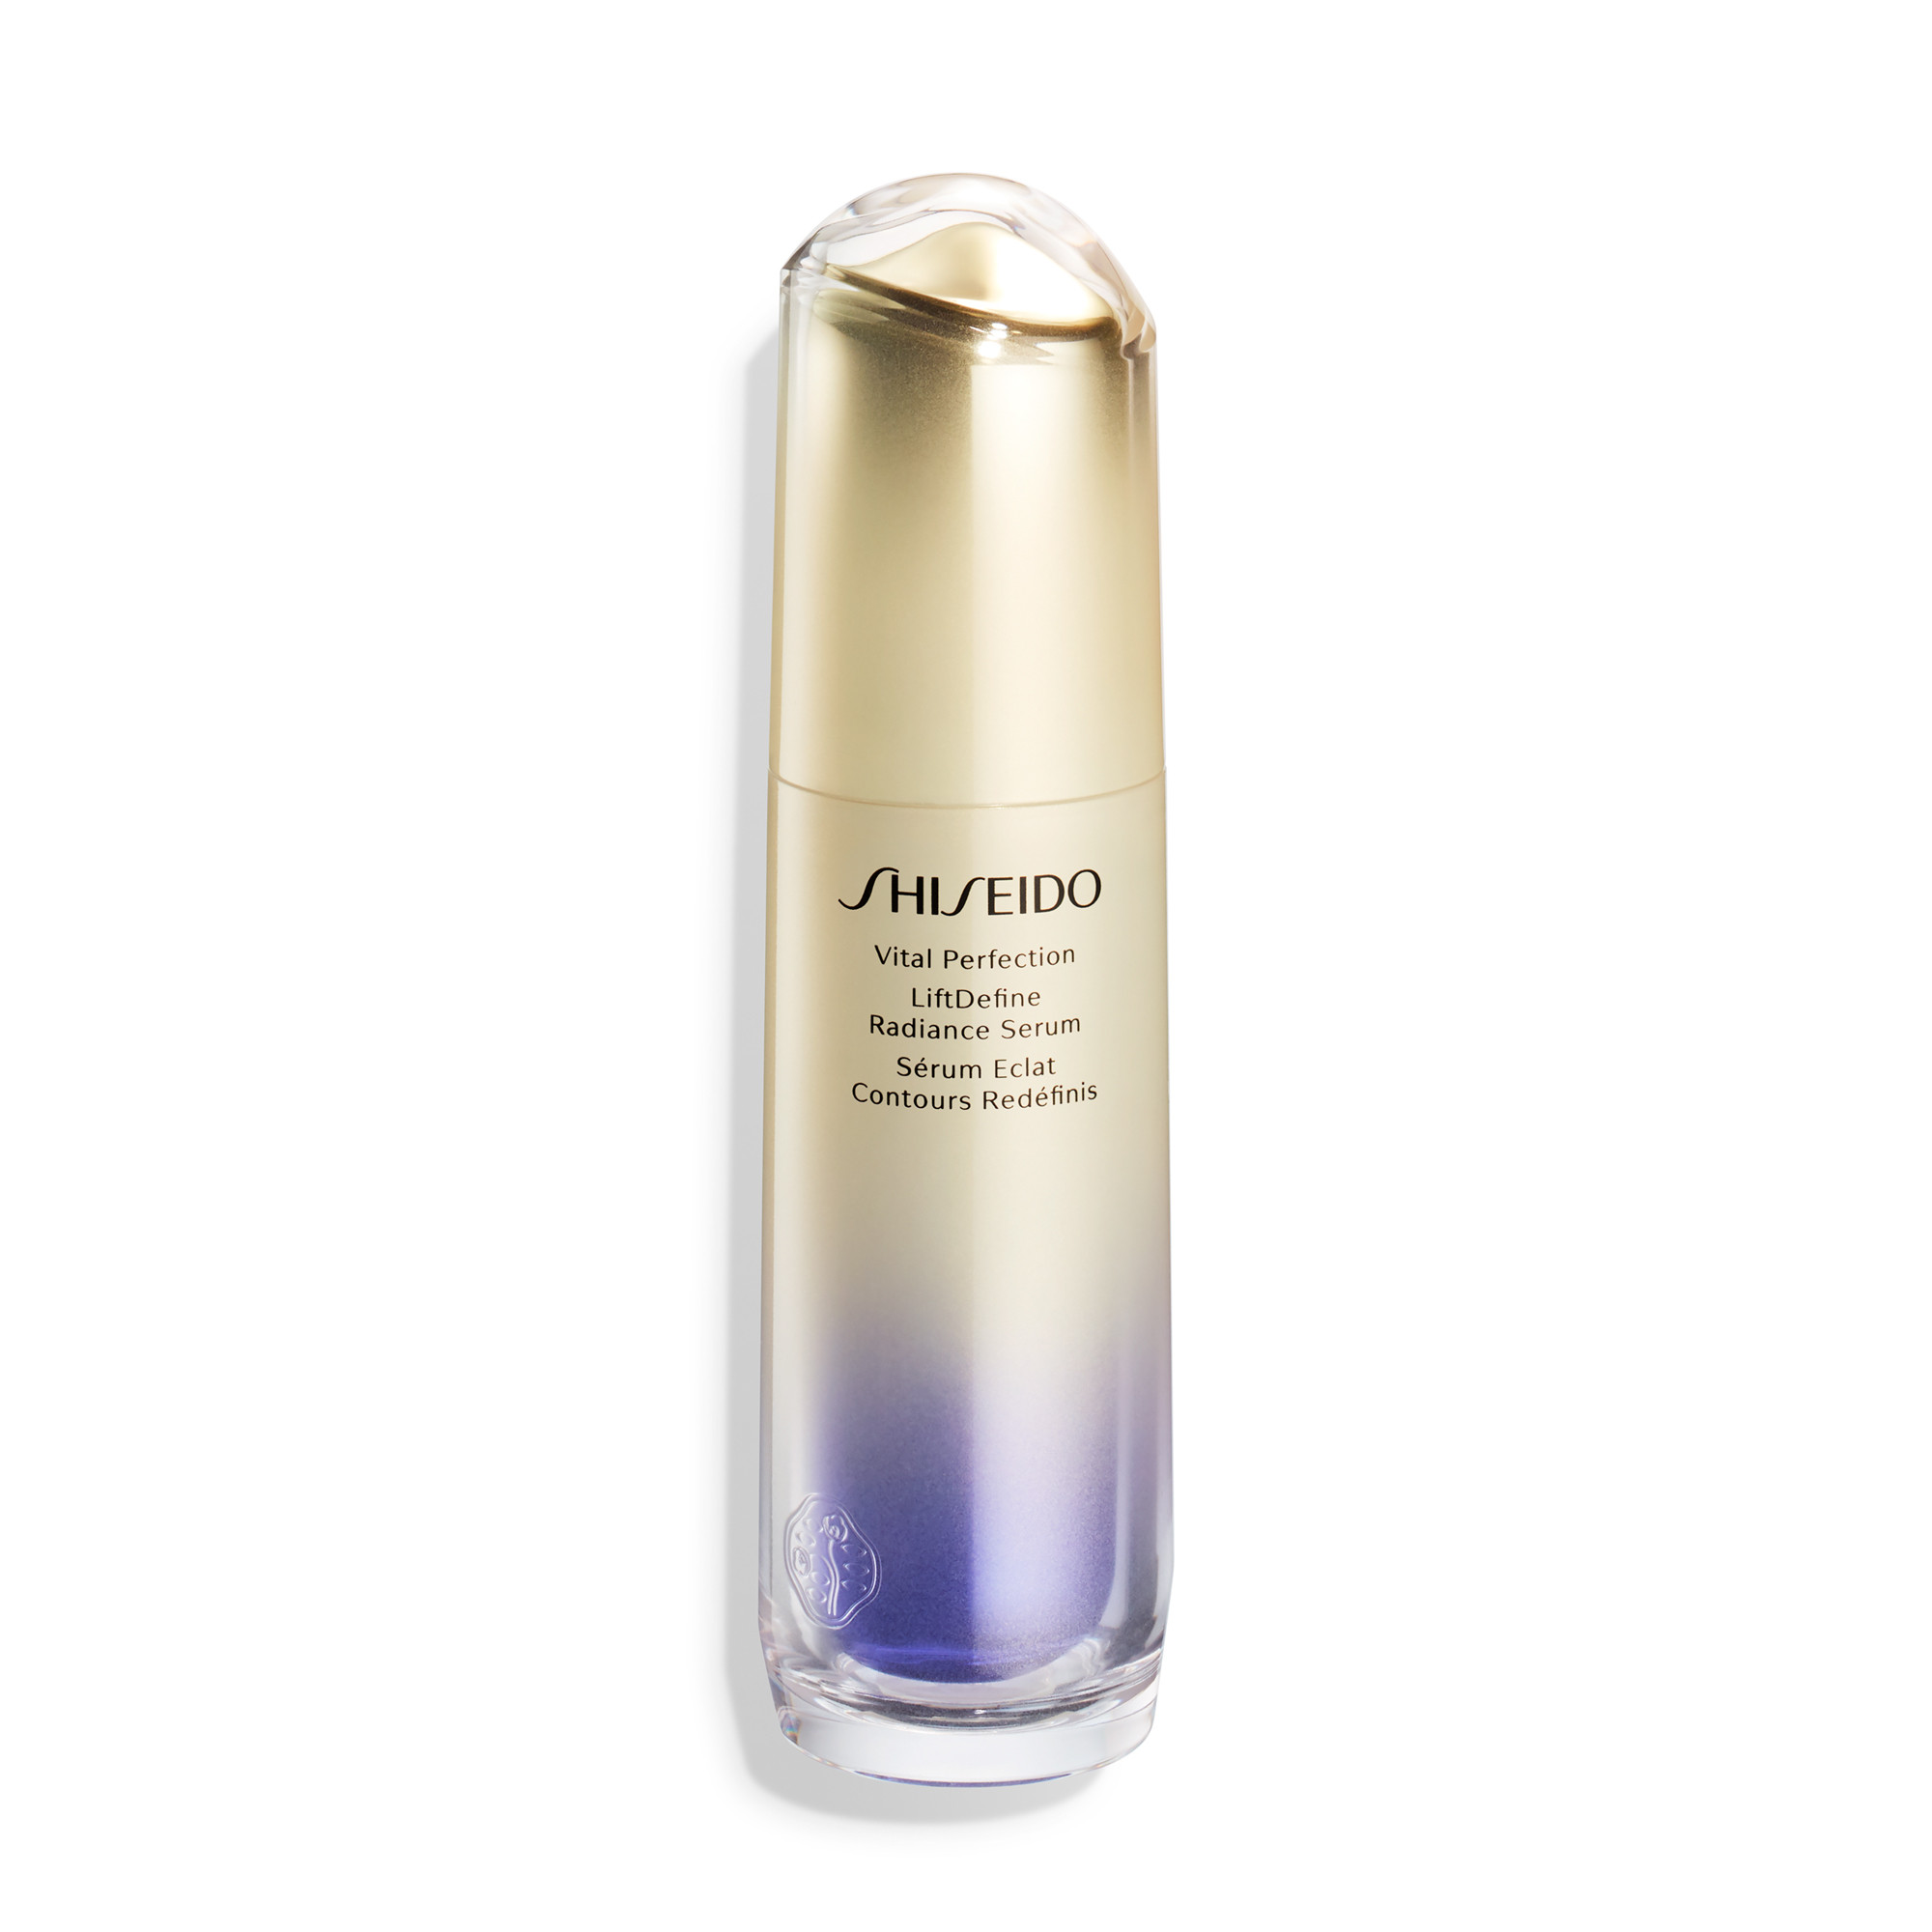 shiseido, vital perfection, retinol, vízitorma, bőrfeszesítő, bőrmegújító, arcápolás, anti agingm maszk, szérum, intensive wrinkle spot treatment ruzs es mas